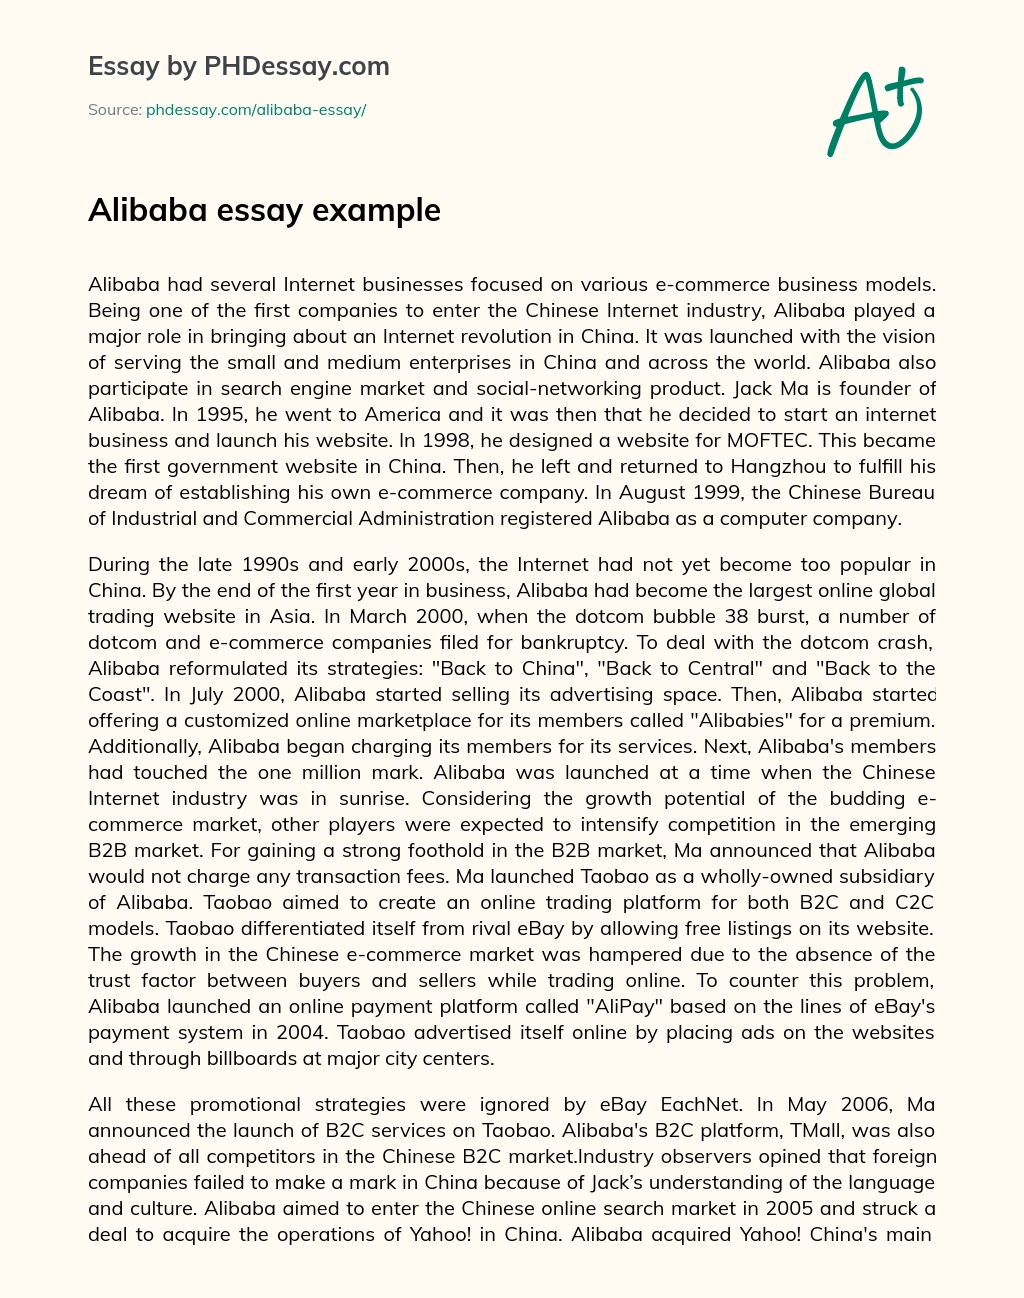 Alibaba essay example essay